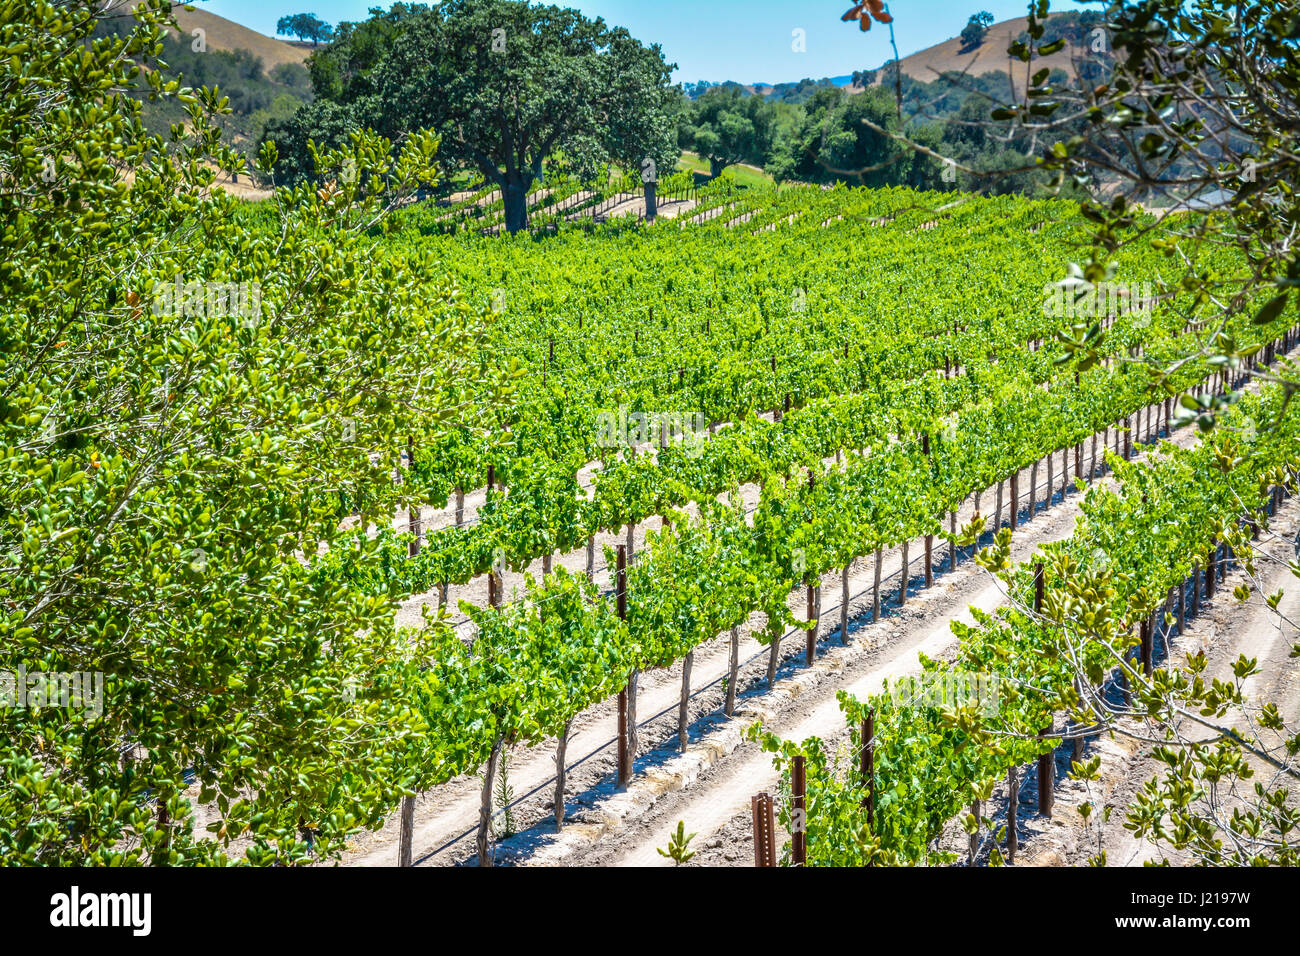 Spalieren Weinstöcke trail entlang der Zeilen eines Weinbergs inmitten der sanften Hügel und Berge von Santa Ynez Tal Wein-Land in Kalifornien Stockfoto